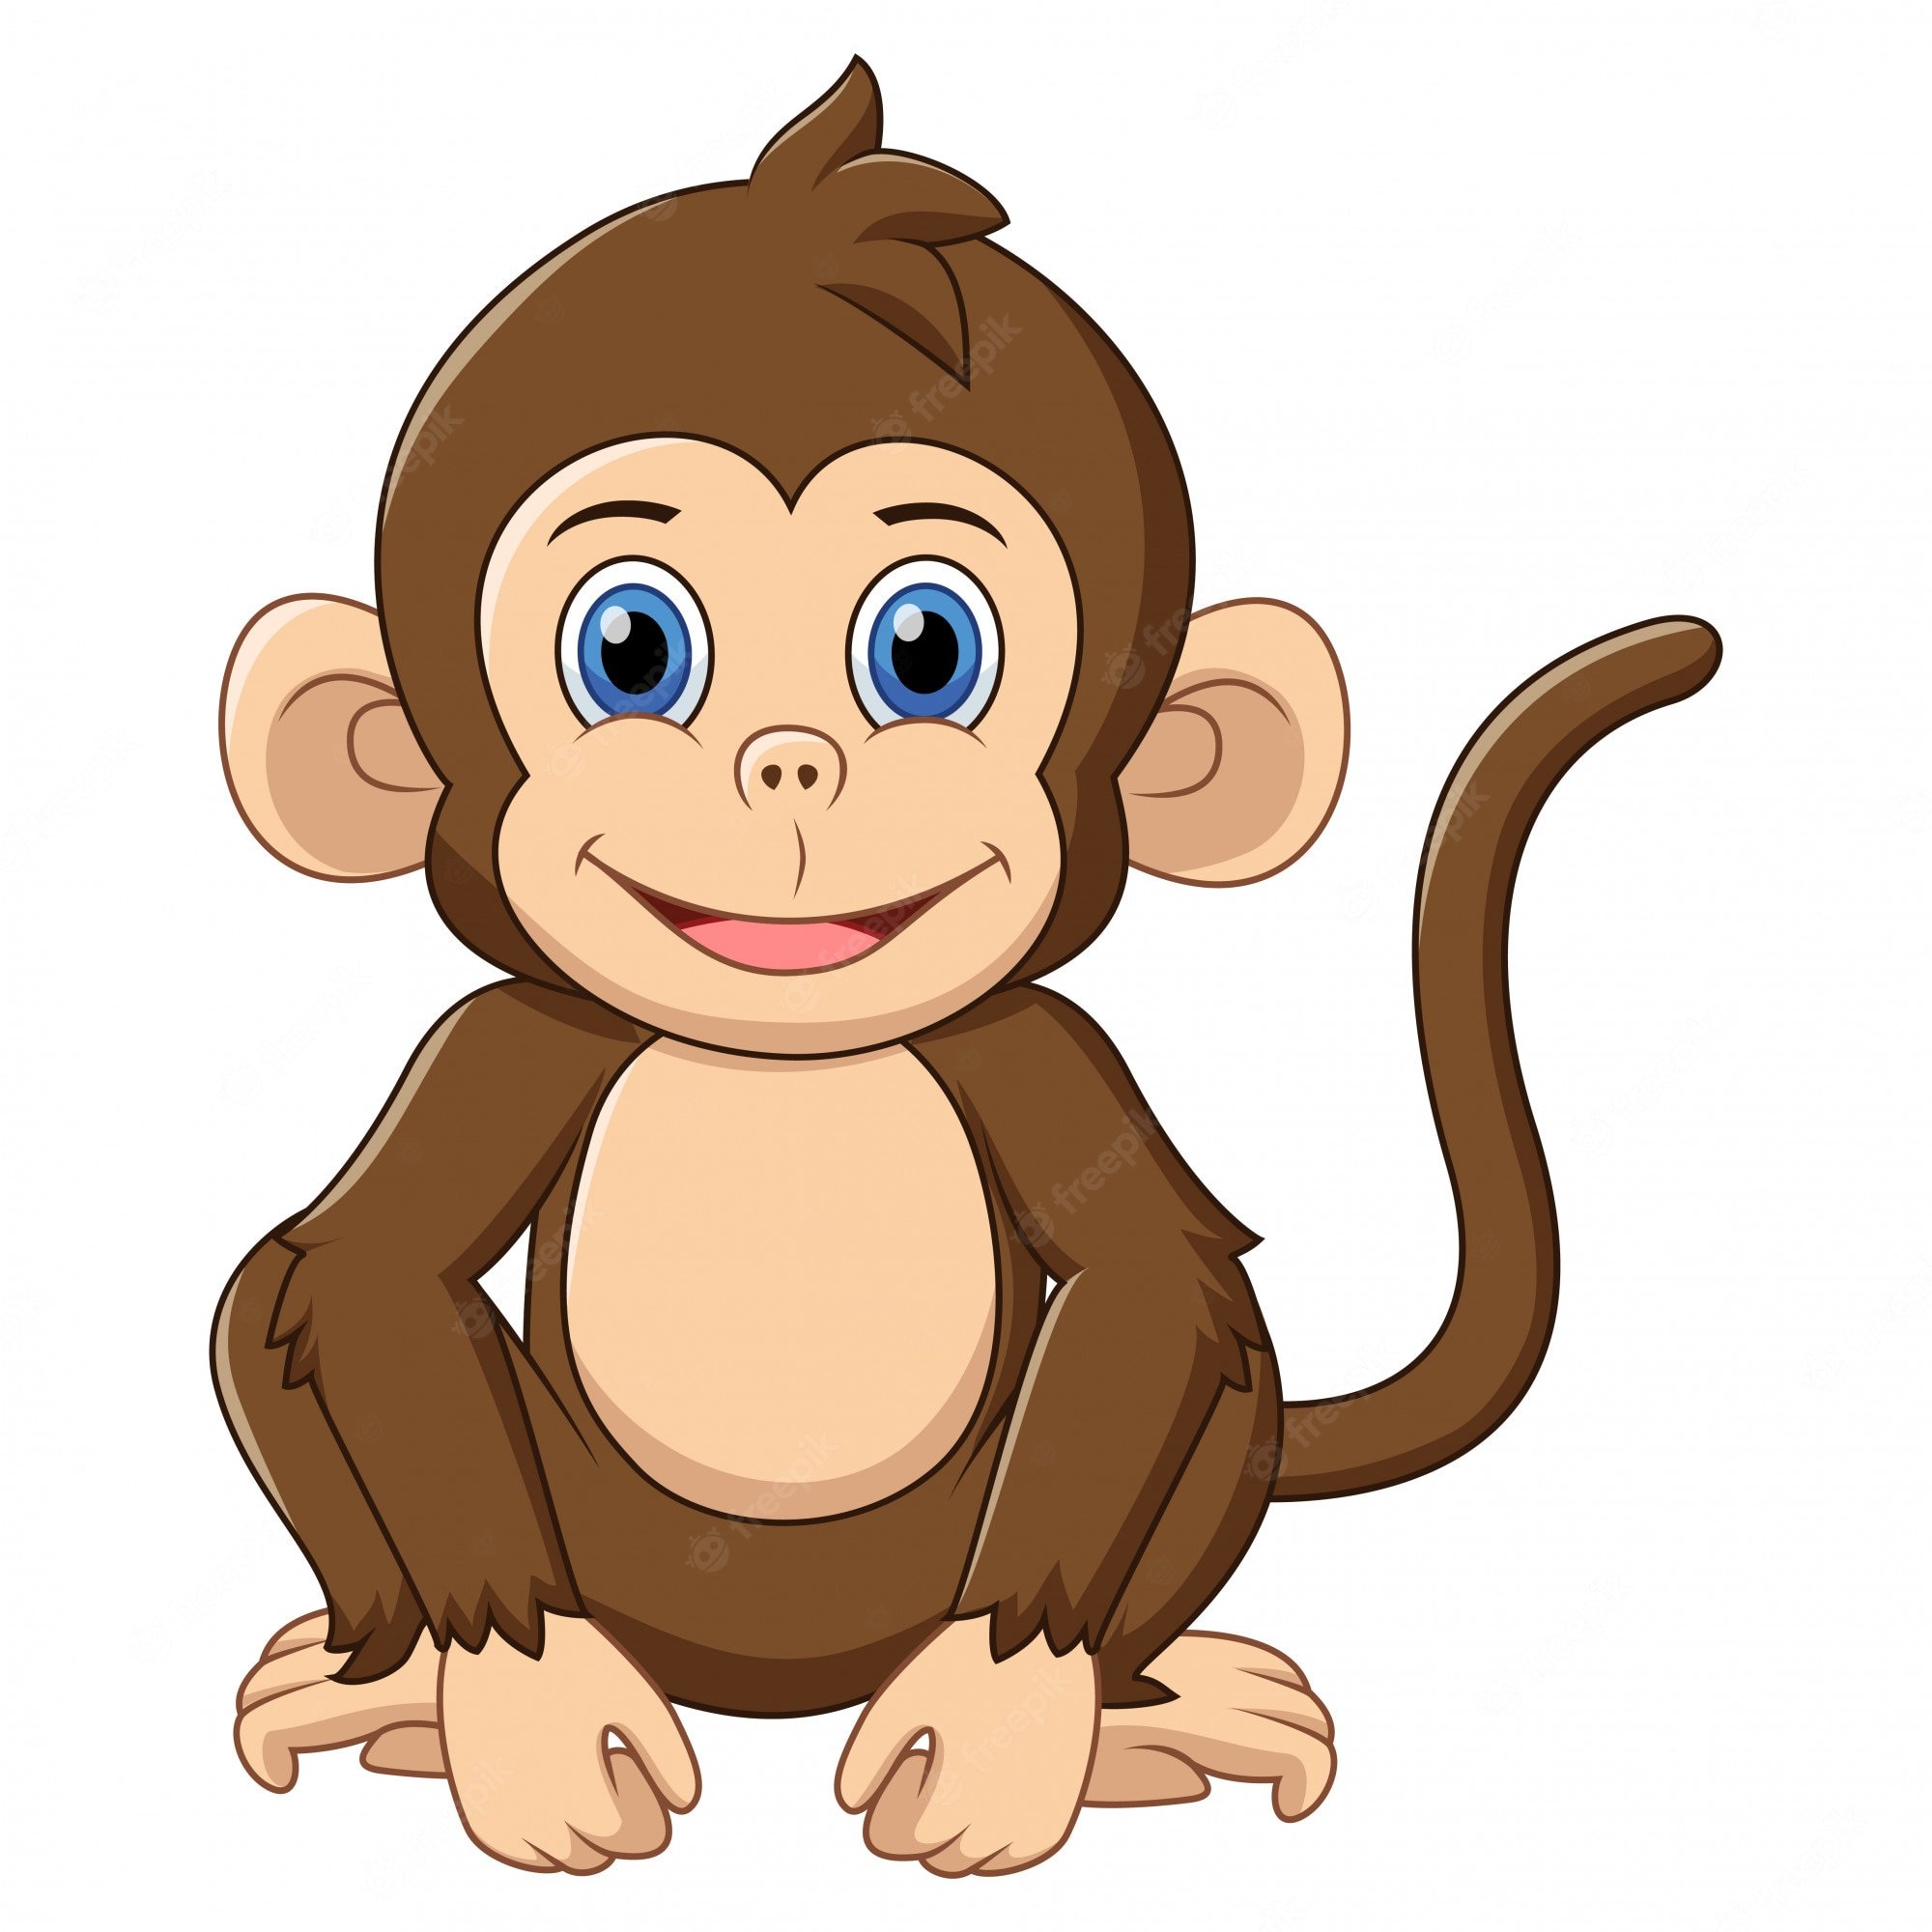 В гостях у сказки: Самостоятельна обезьянка.1.1
Рекомендуется  для деток в возрасте от 2-5 лет.